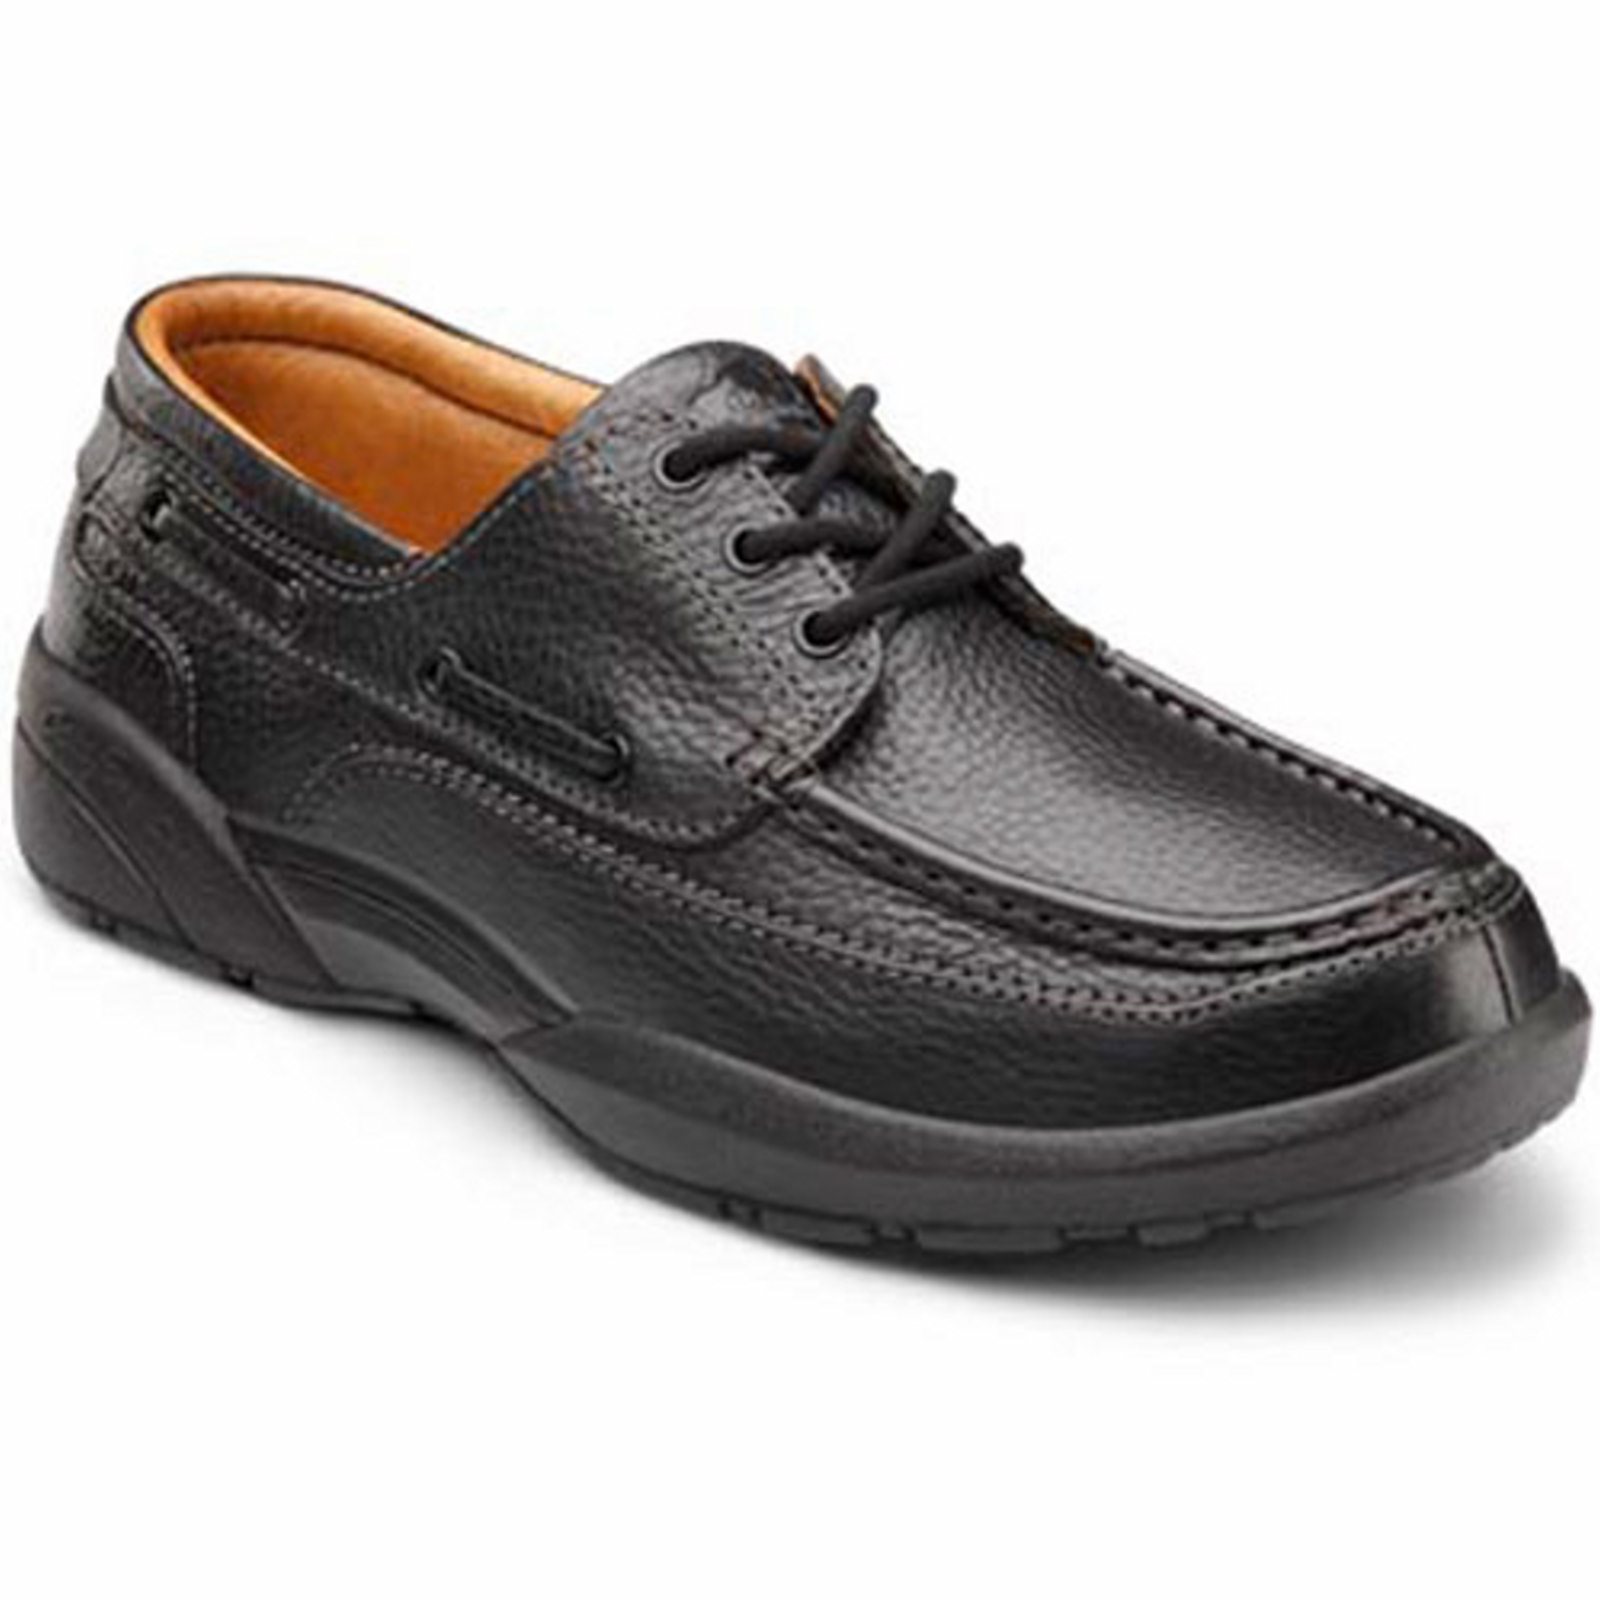 Dr. Comfort Patrick Men's Boat Shoe: 9.5 Wide (E/2E) Black Lace - image 1 of 4